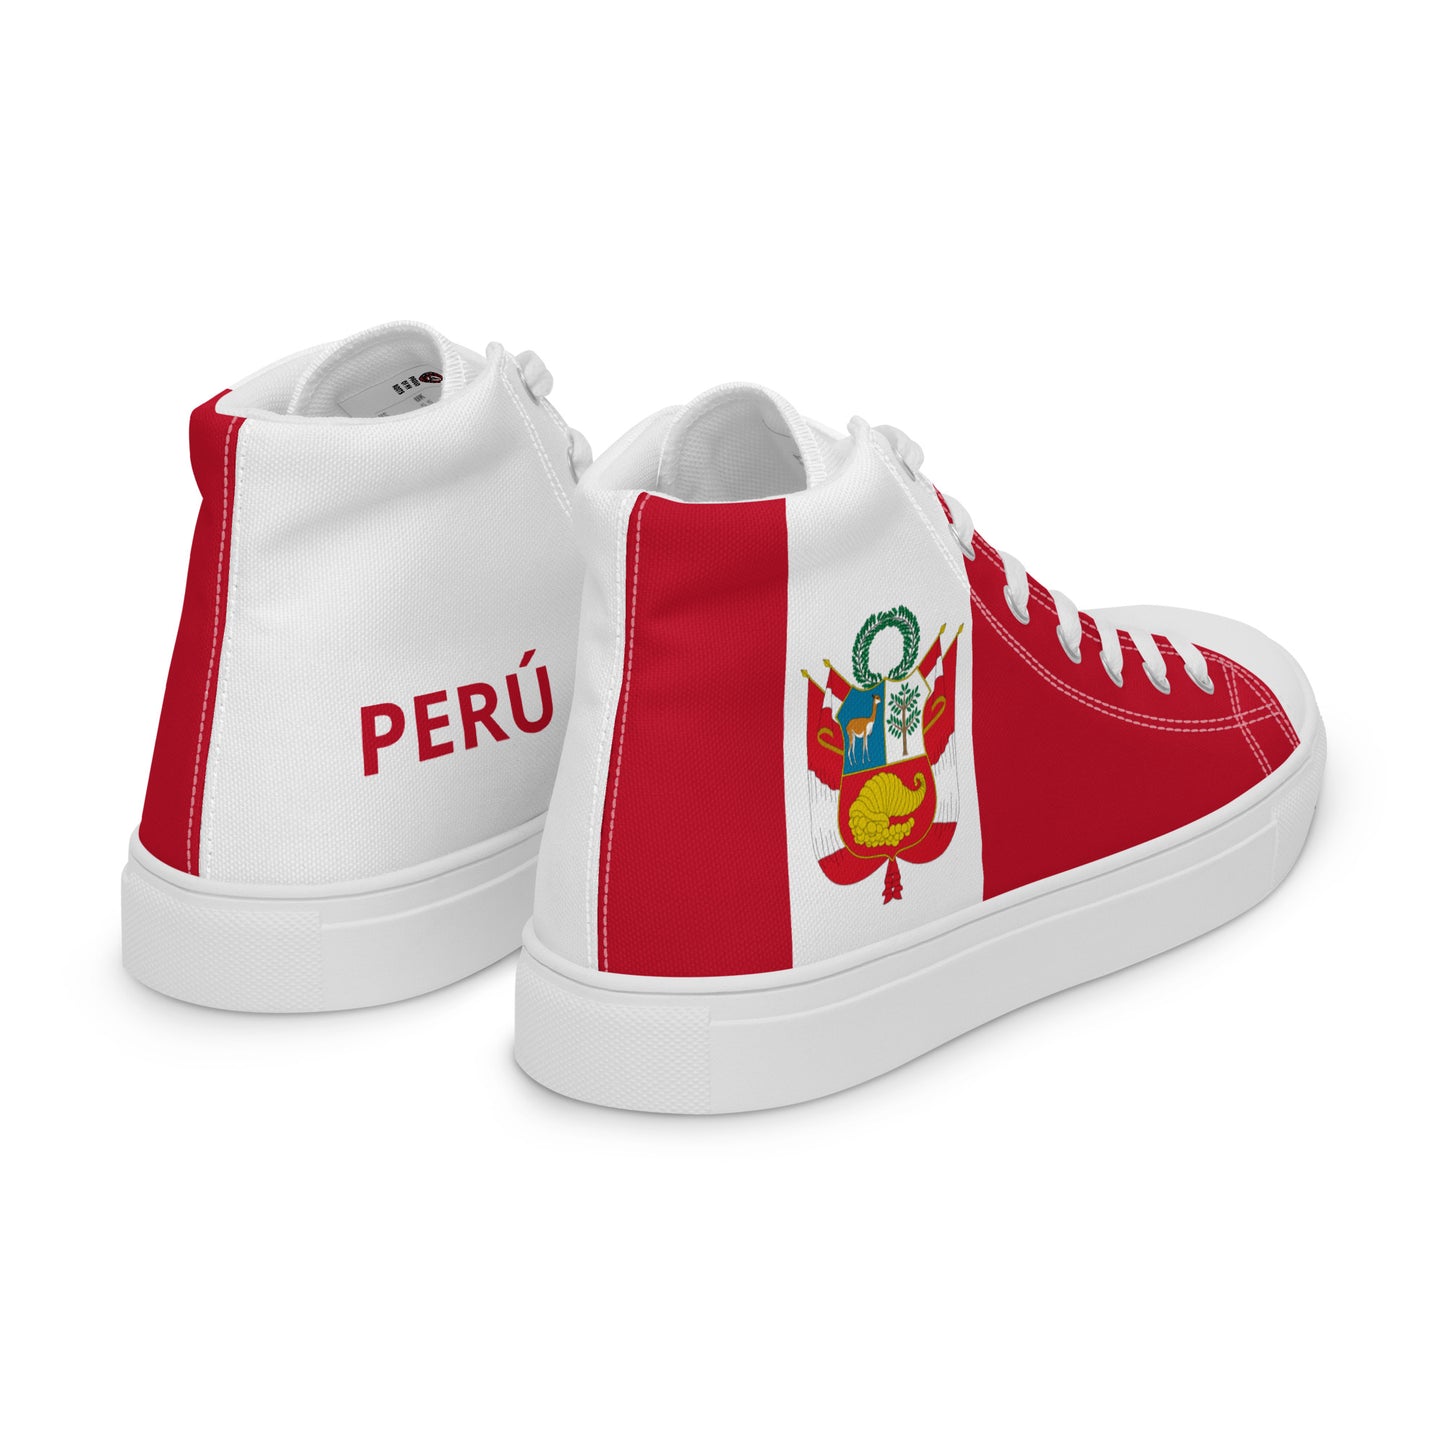 Perú - Men - Bandera - High top shoes